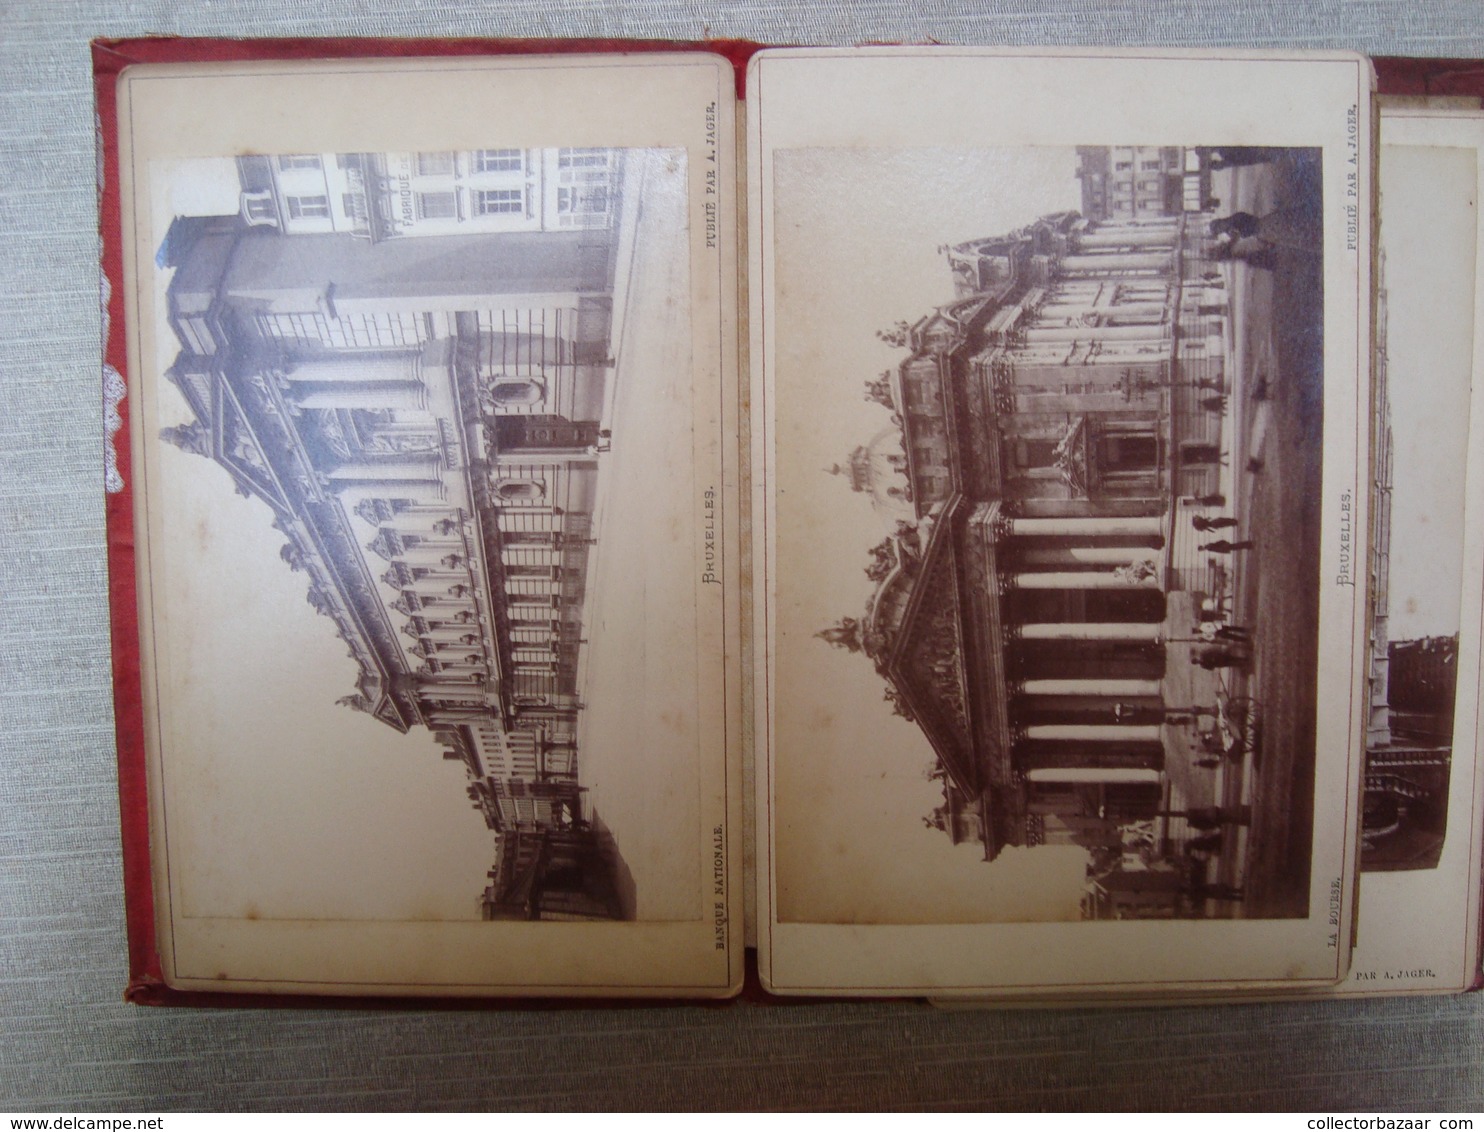 Album souvenir 24 photographies ca1890 "  Souvenir de Bruxelles " Photo publie par A. JAGER FOTO BELGIUM BELGIQUE